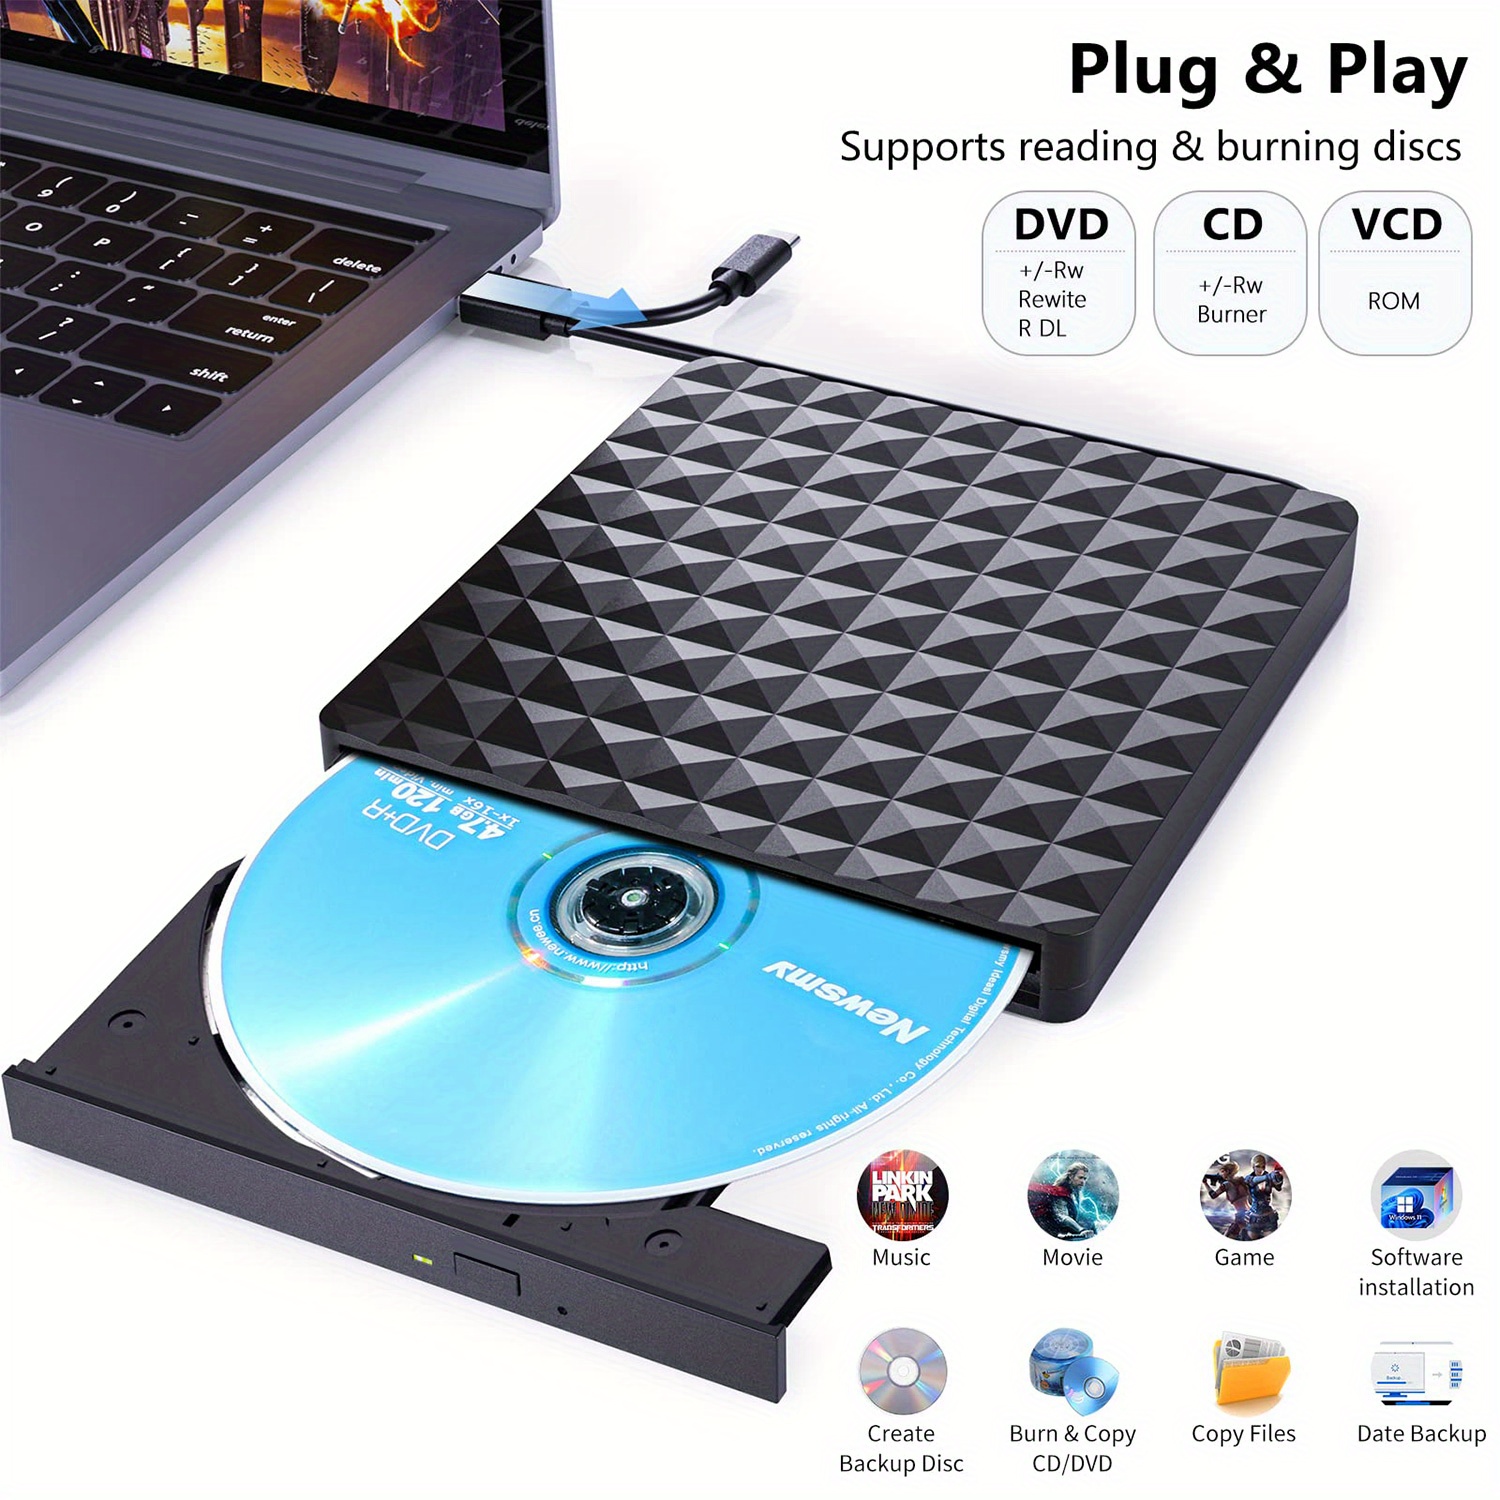 Lecteur CD DVD Externe Pour Ordinateur Portable USB 3.0 Type